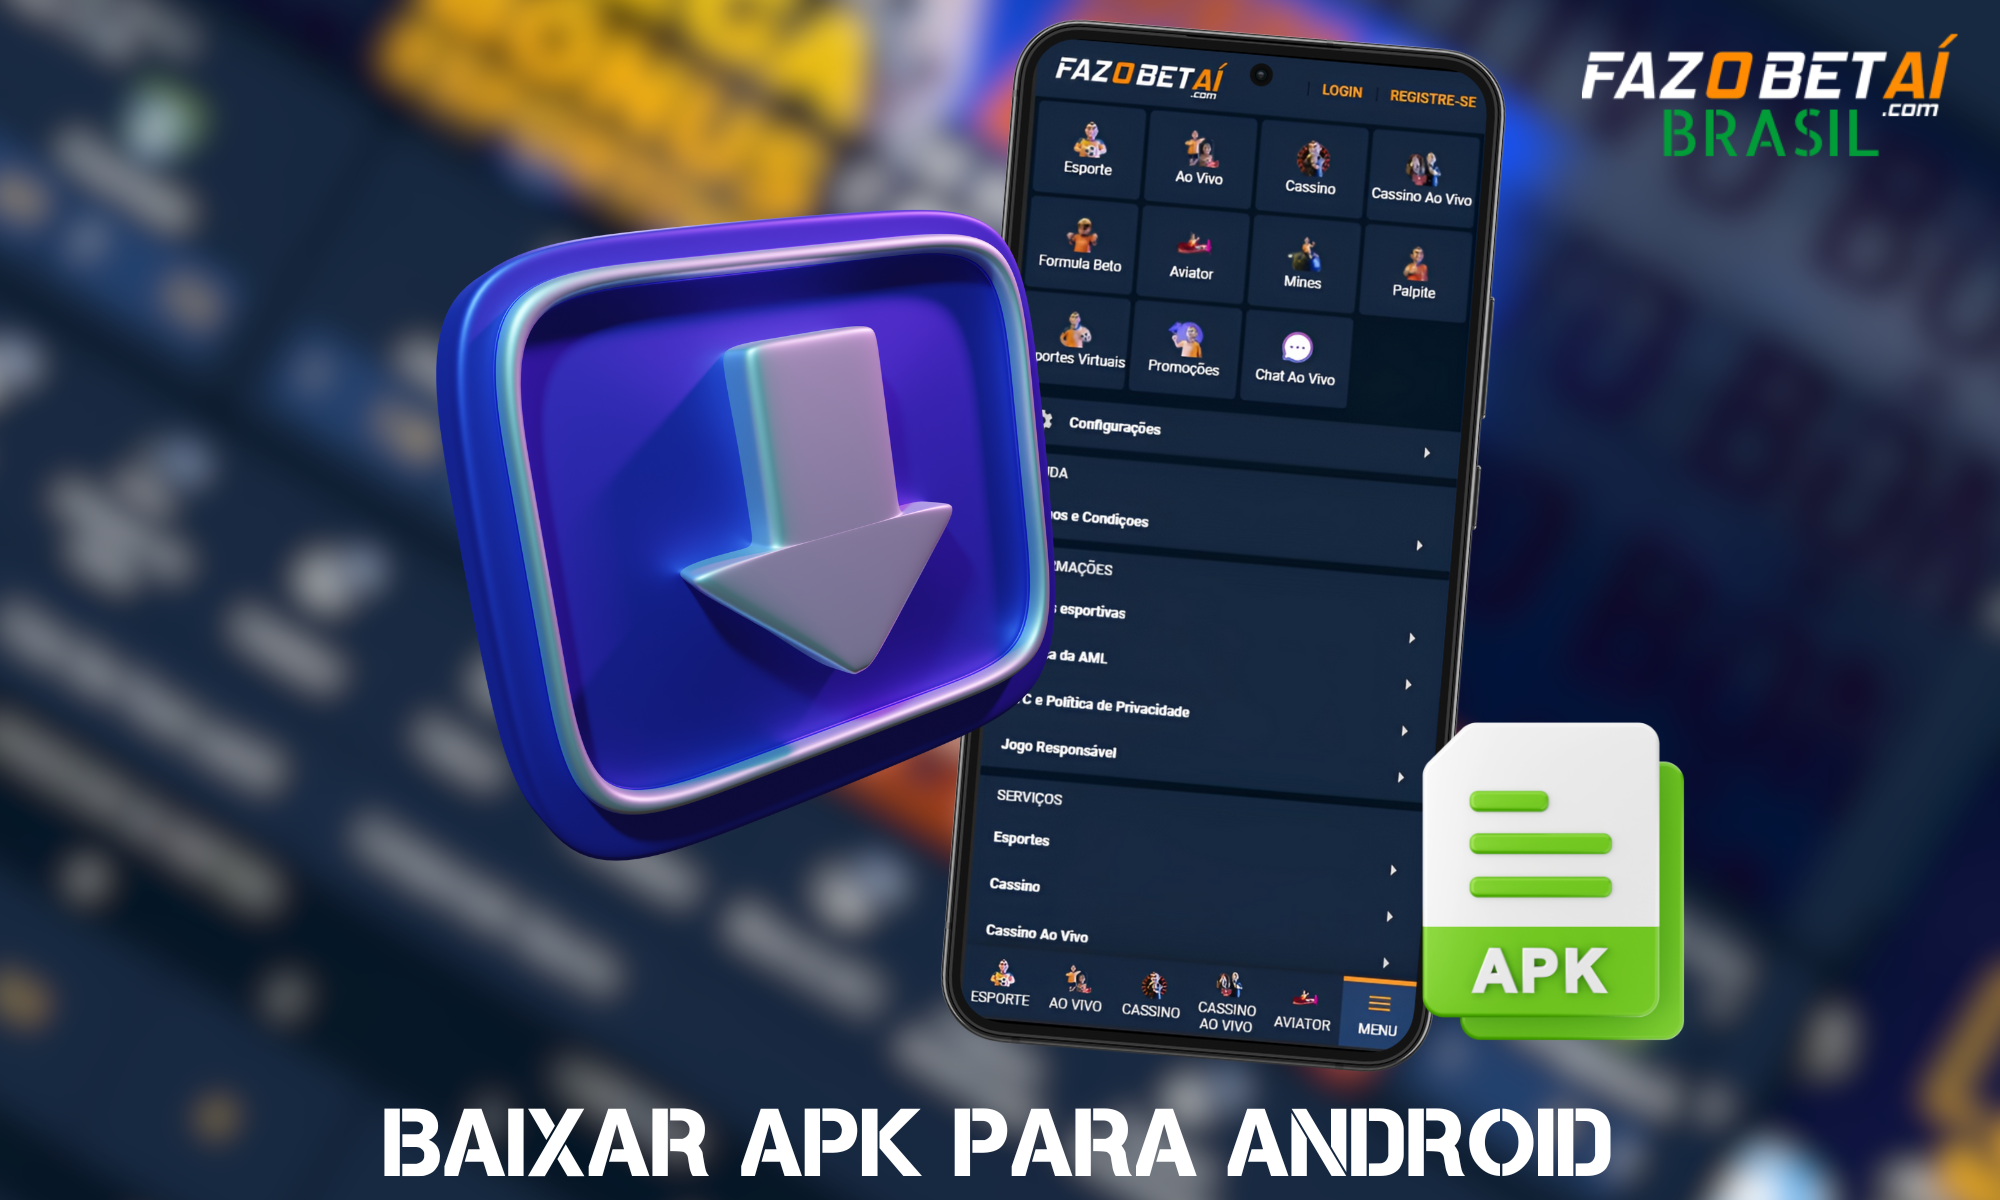 Instruções passo a passo sobre como fazer o download do aplicativo Fazobetai no Android